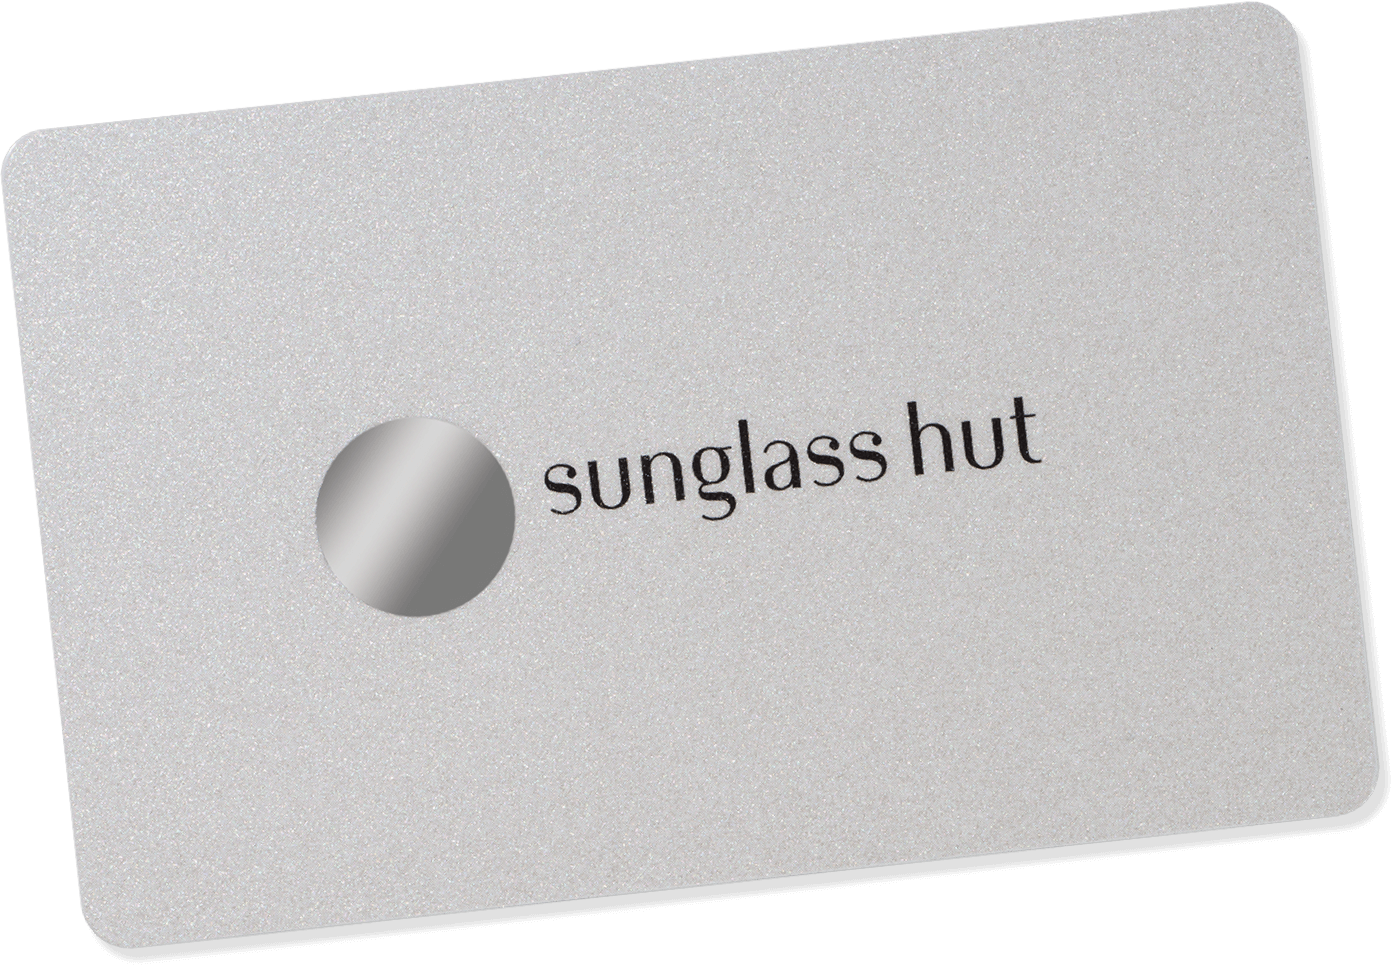 Share more than 185 sunglass hut printable coupon latest